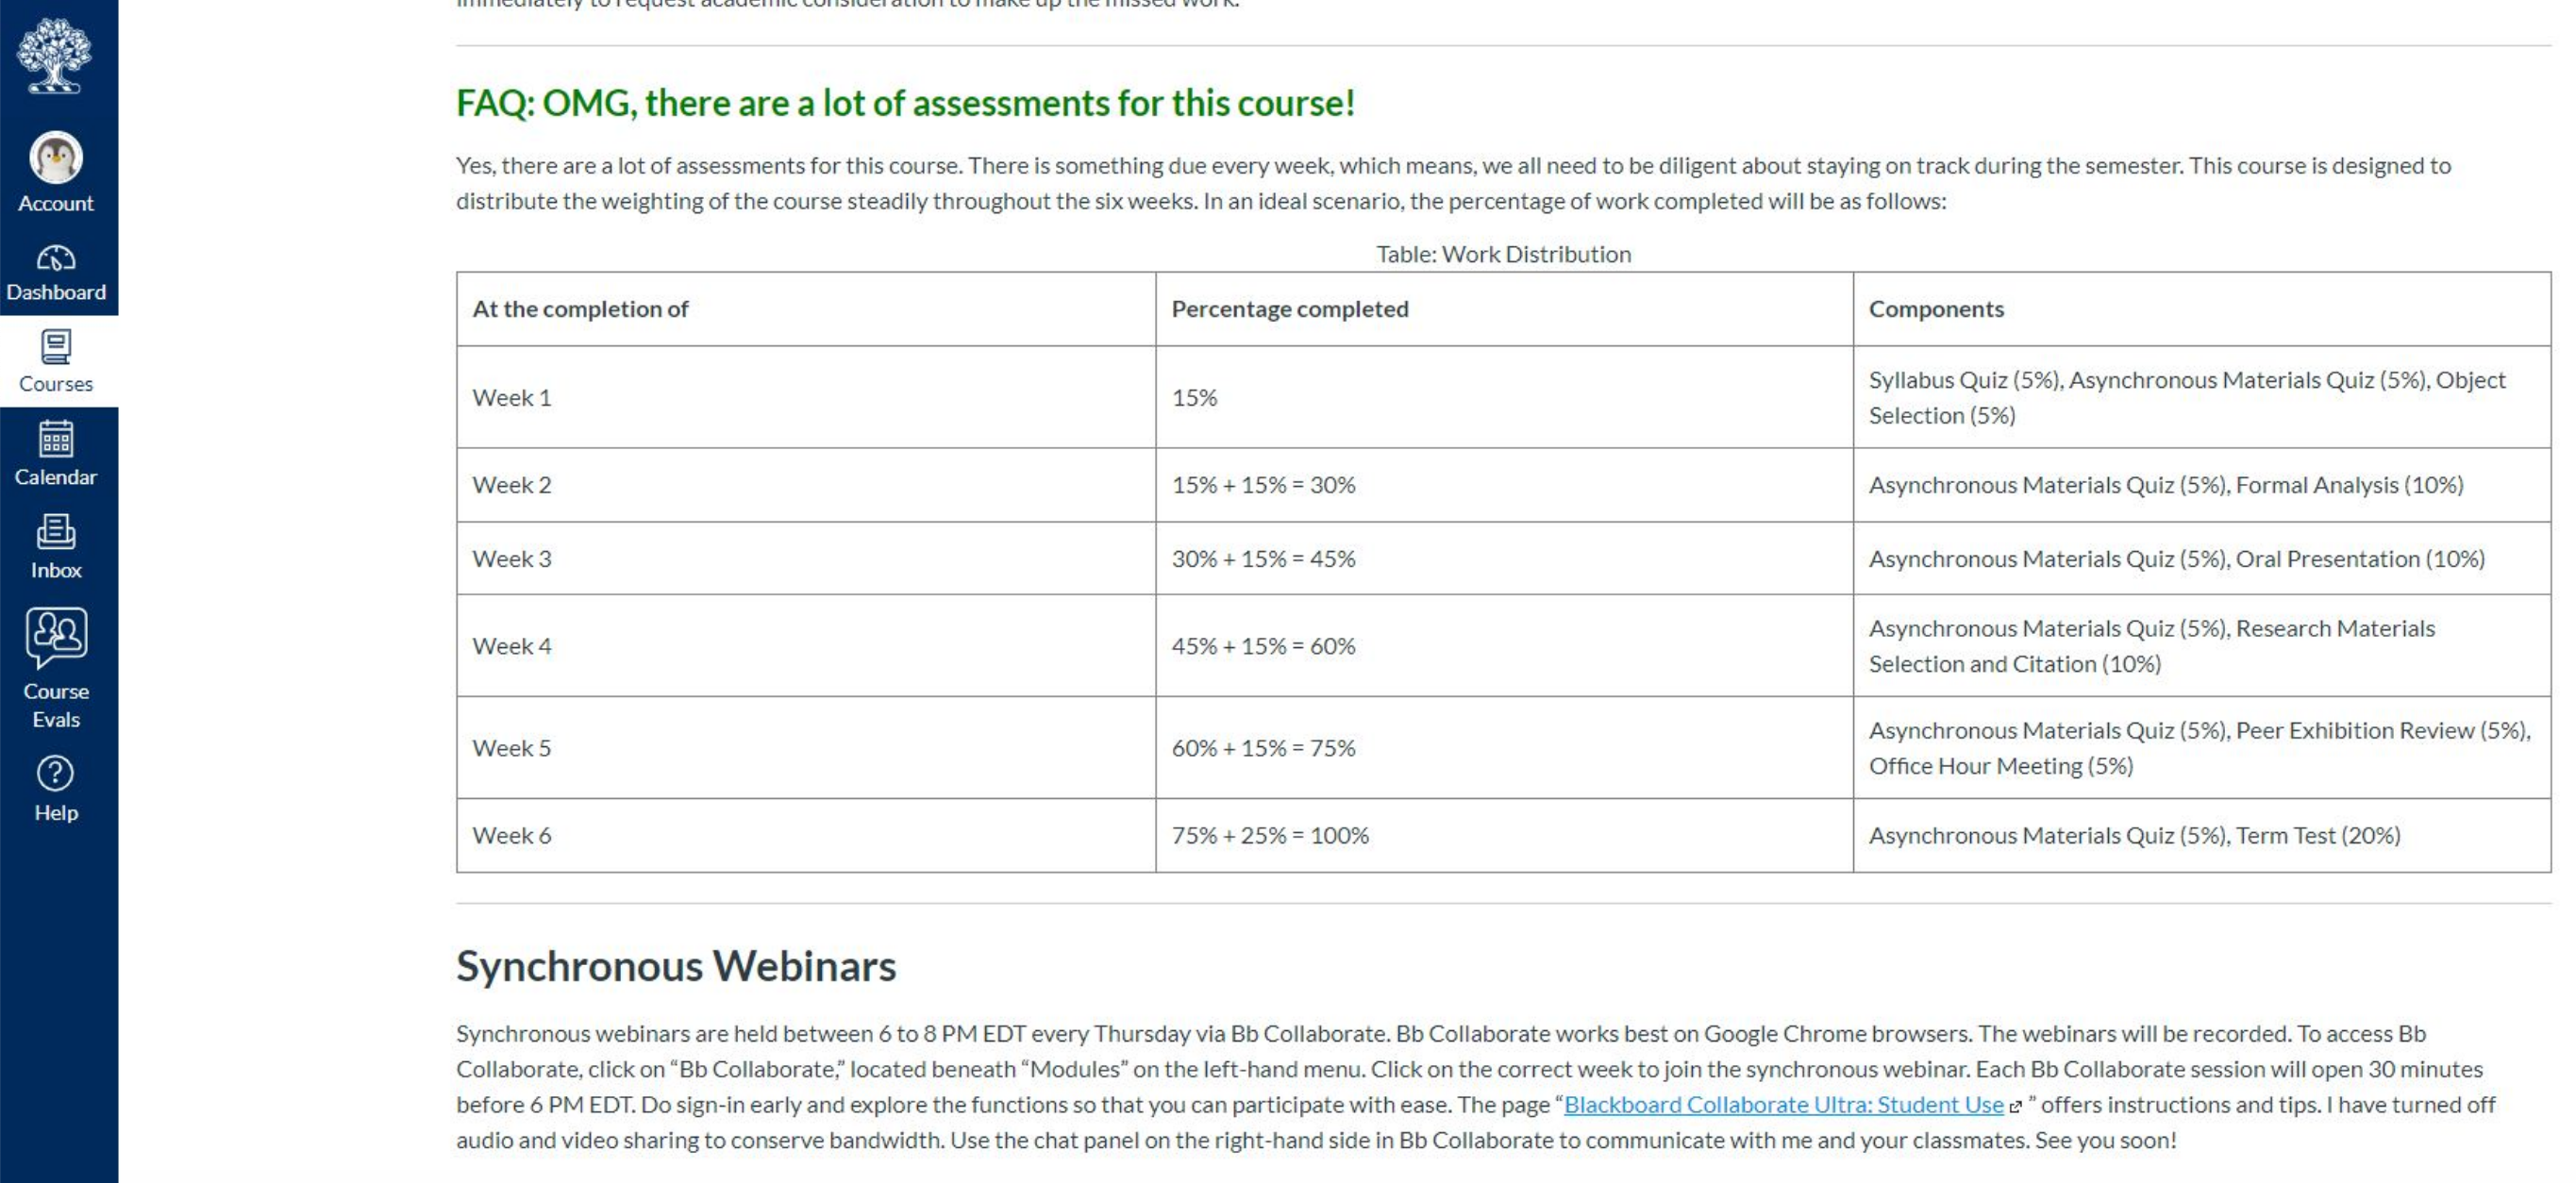 Quercus screenshot of assessment modules